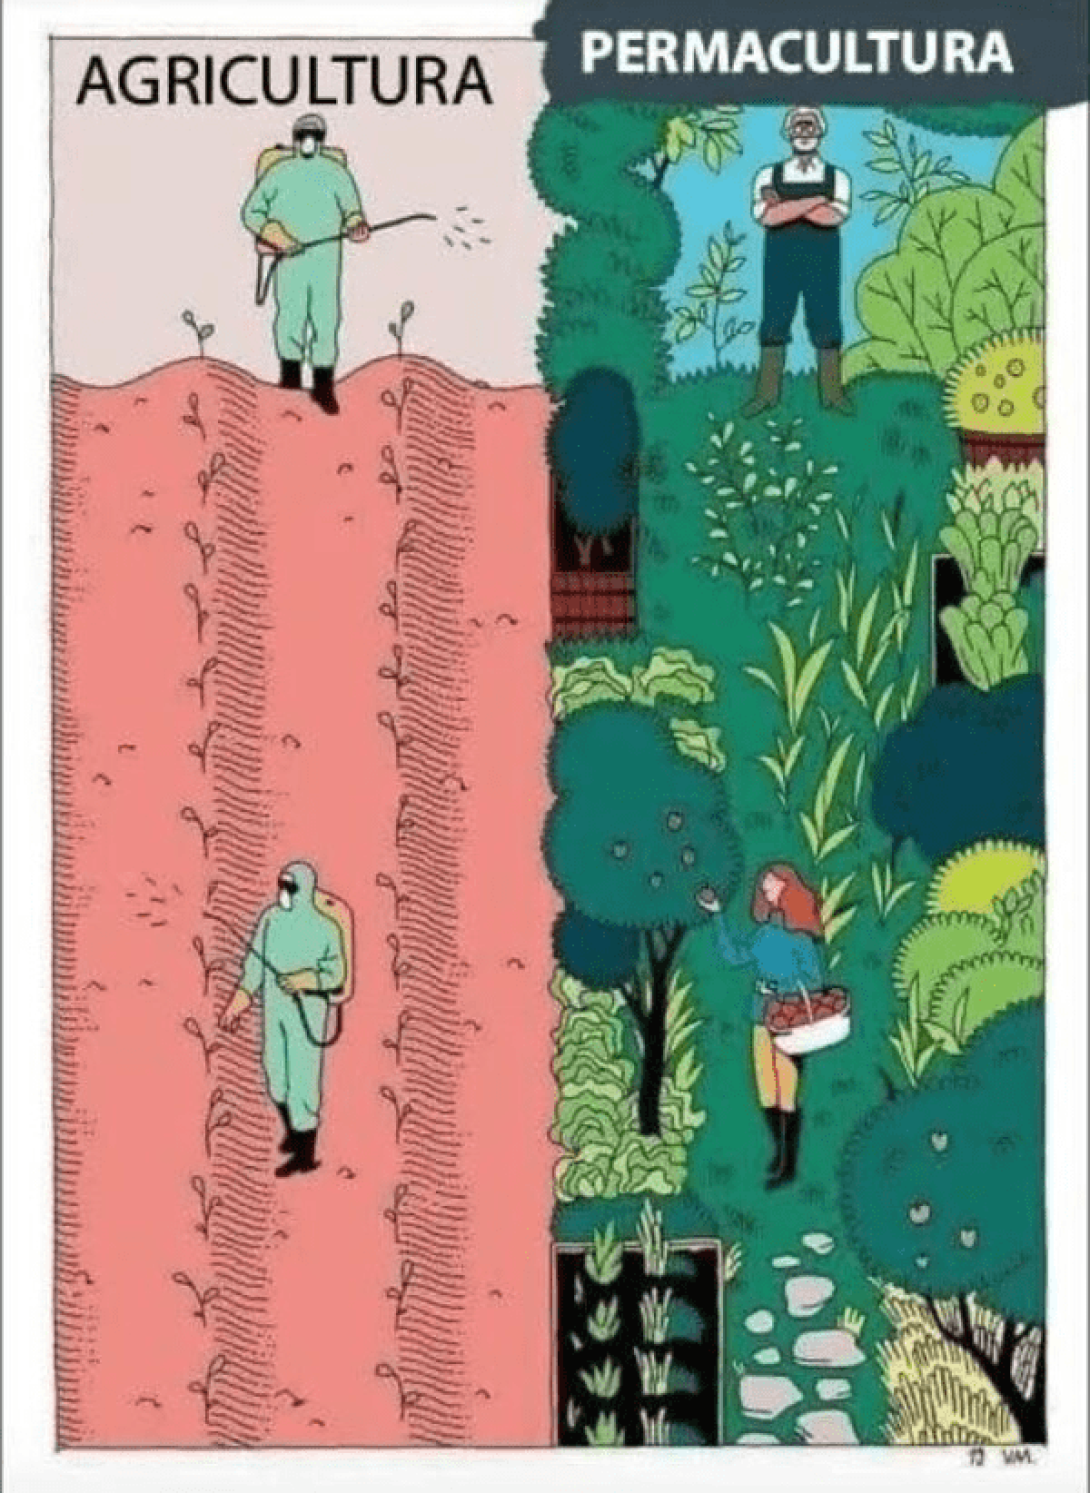 Ilustración sobre las diferencias entre la agricultura tradicional y la permacultura.